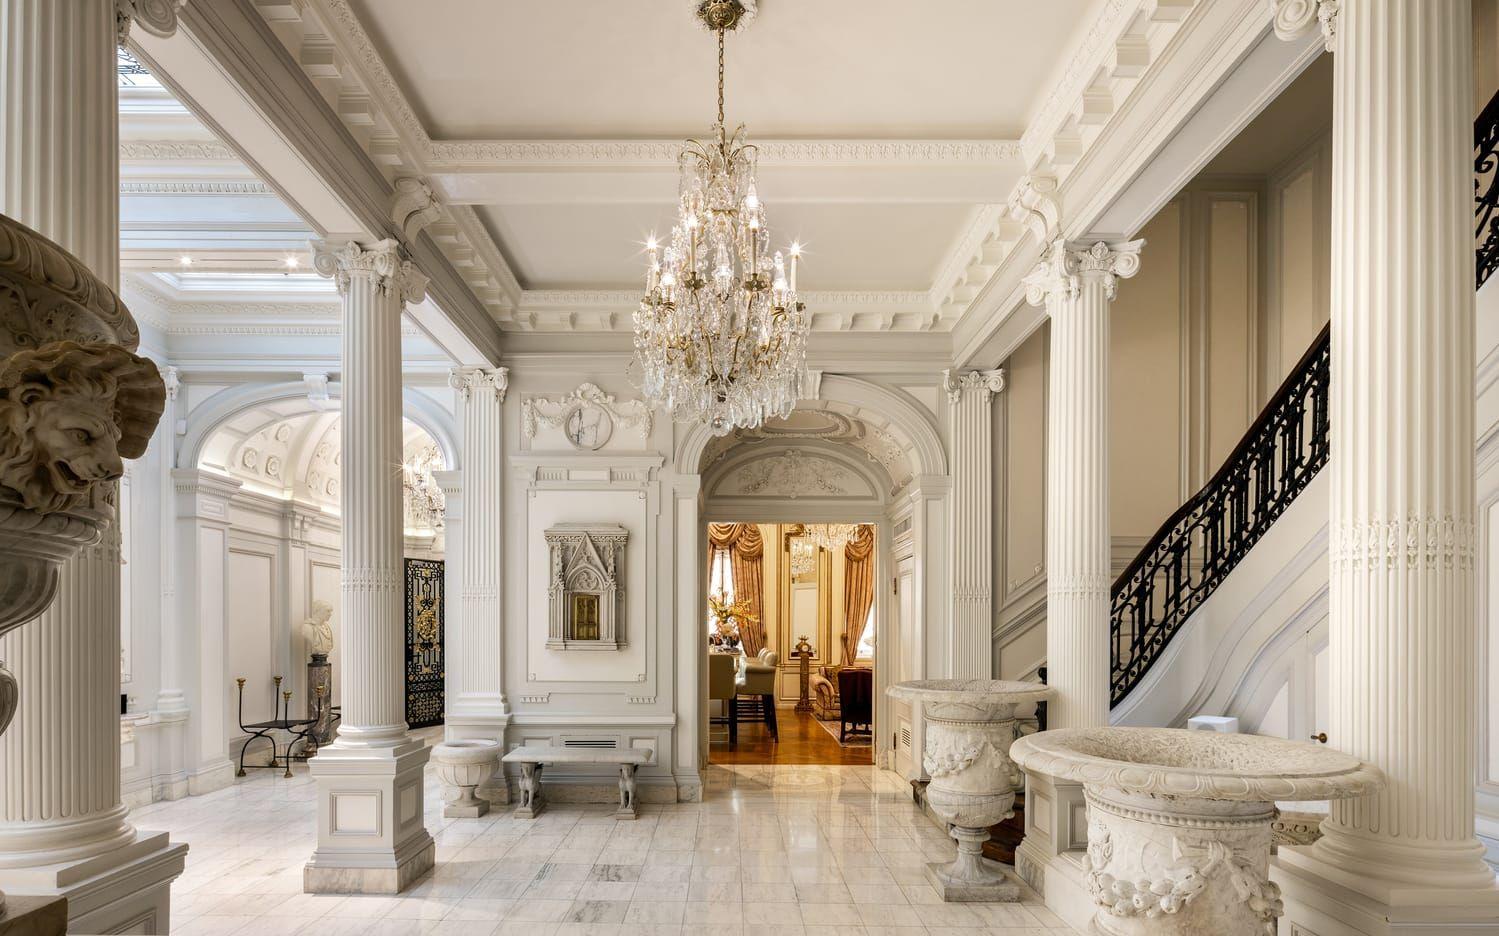 Hur många har marmorgolv, stora pelare, kristallkronor och stora urnor i hallen? 